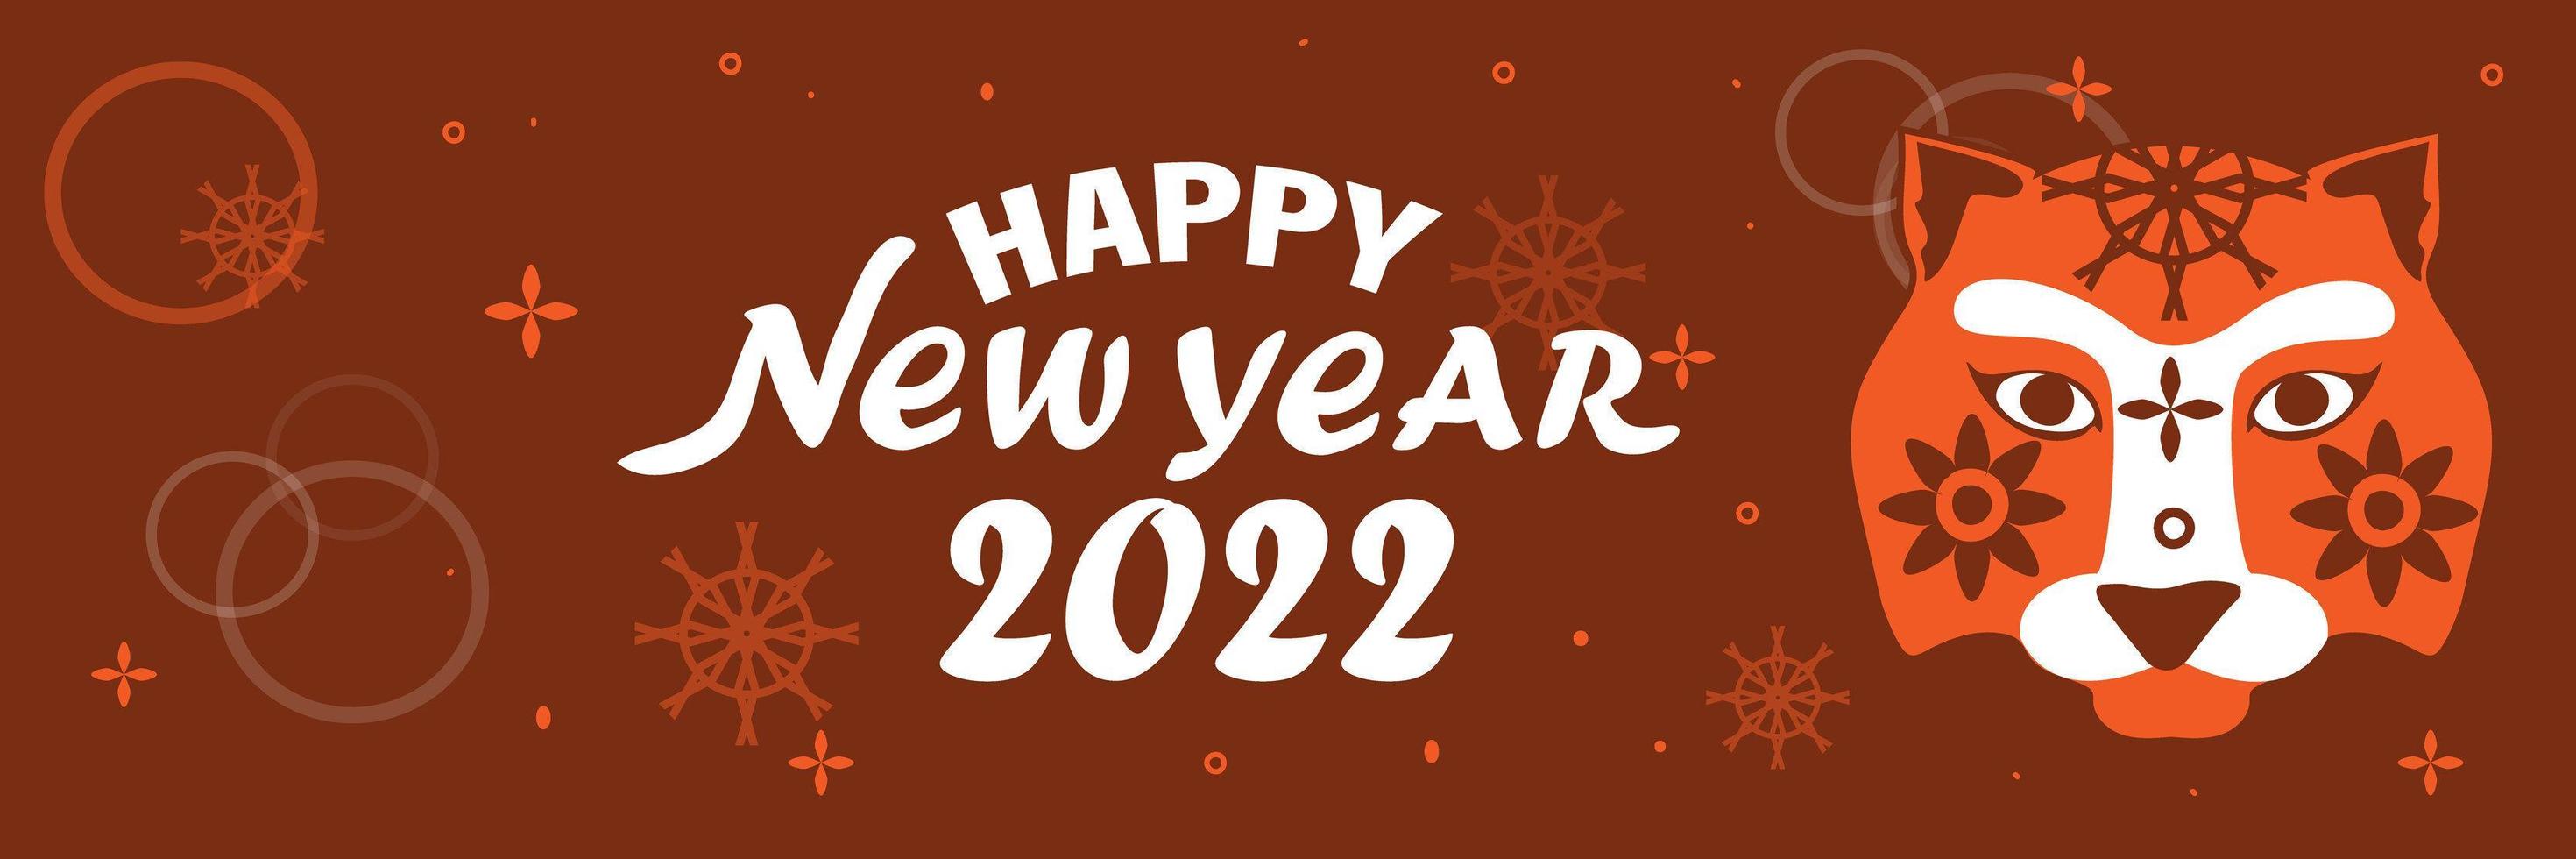 illustrations pour le nouvel an chinois 2022, année du tigre. nouvel an lunaire 2022. fond de nouvel an chinois, bannière, carte de voeux vecteur